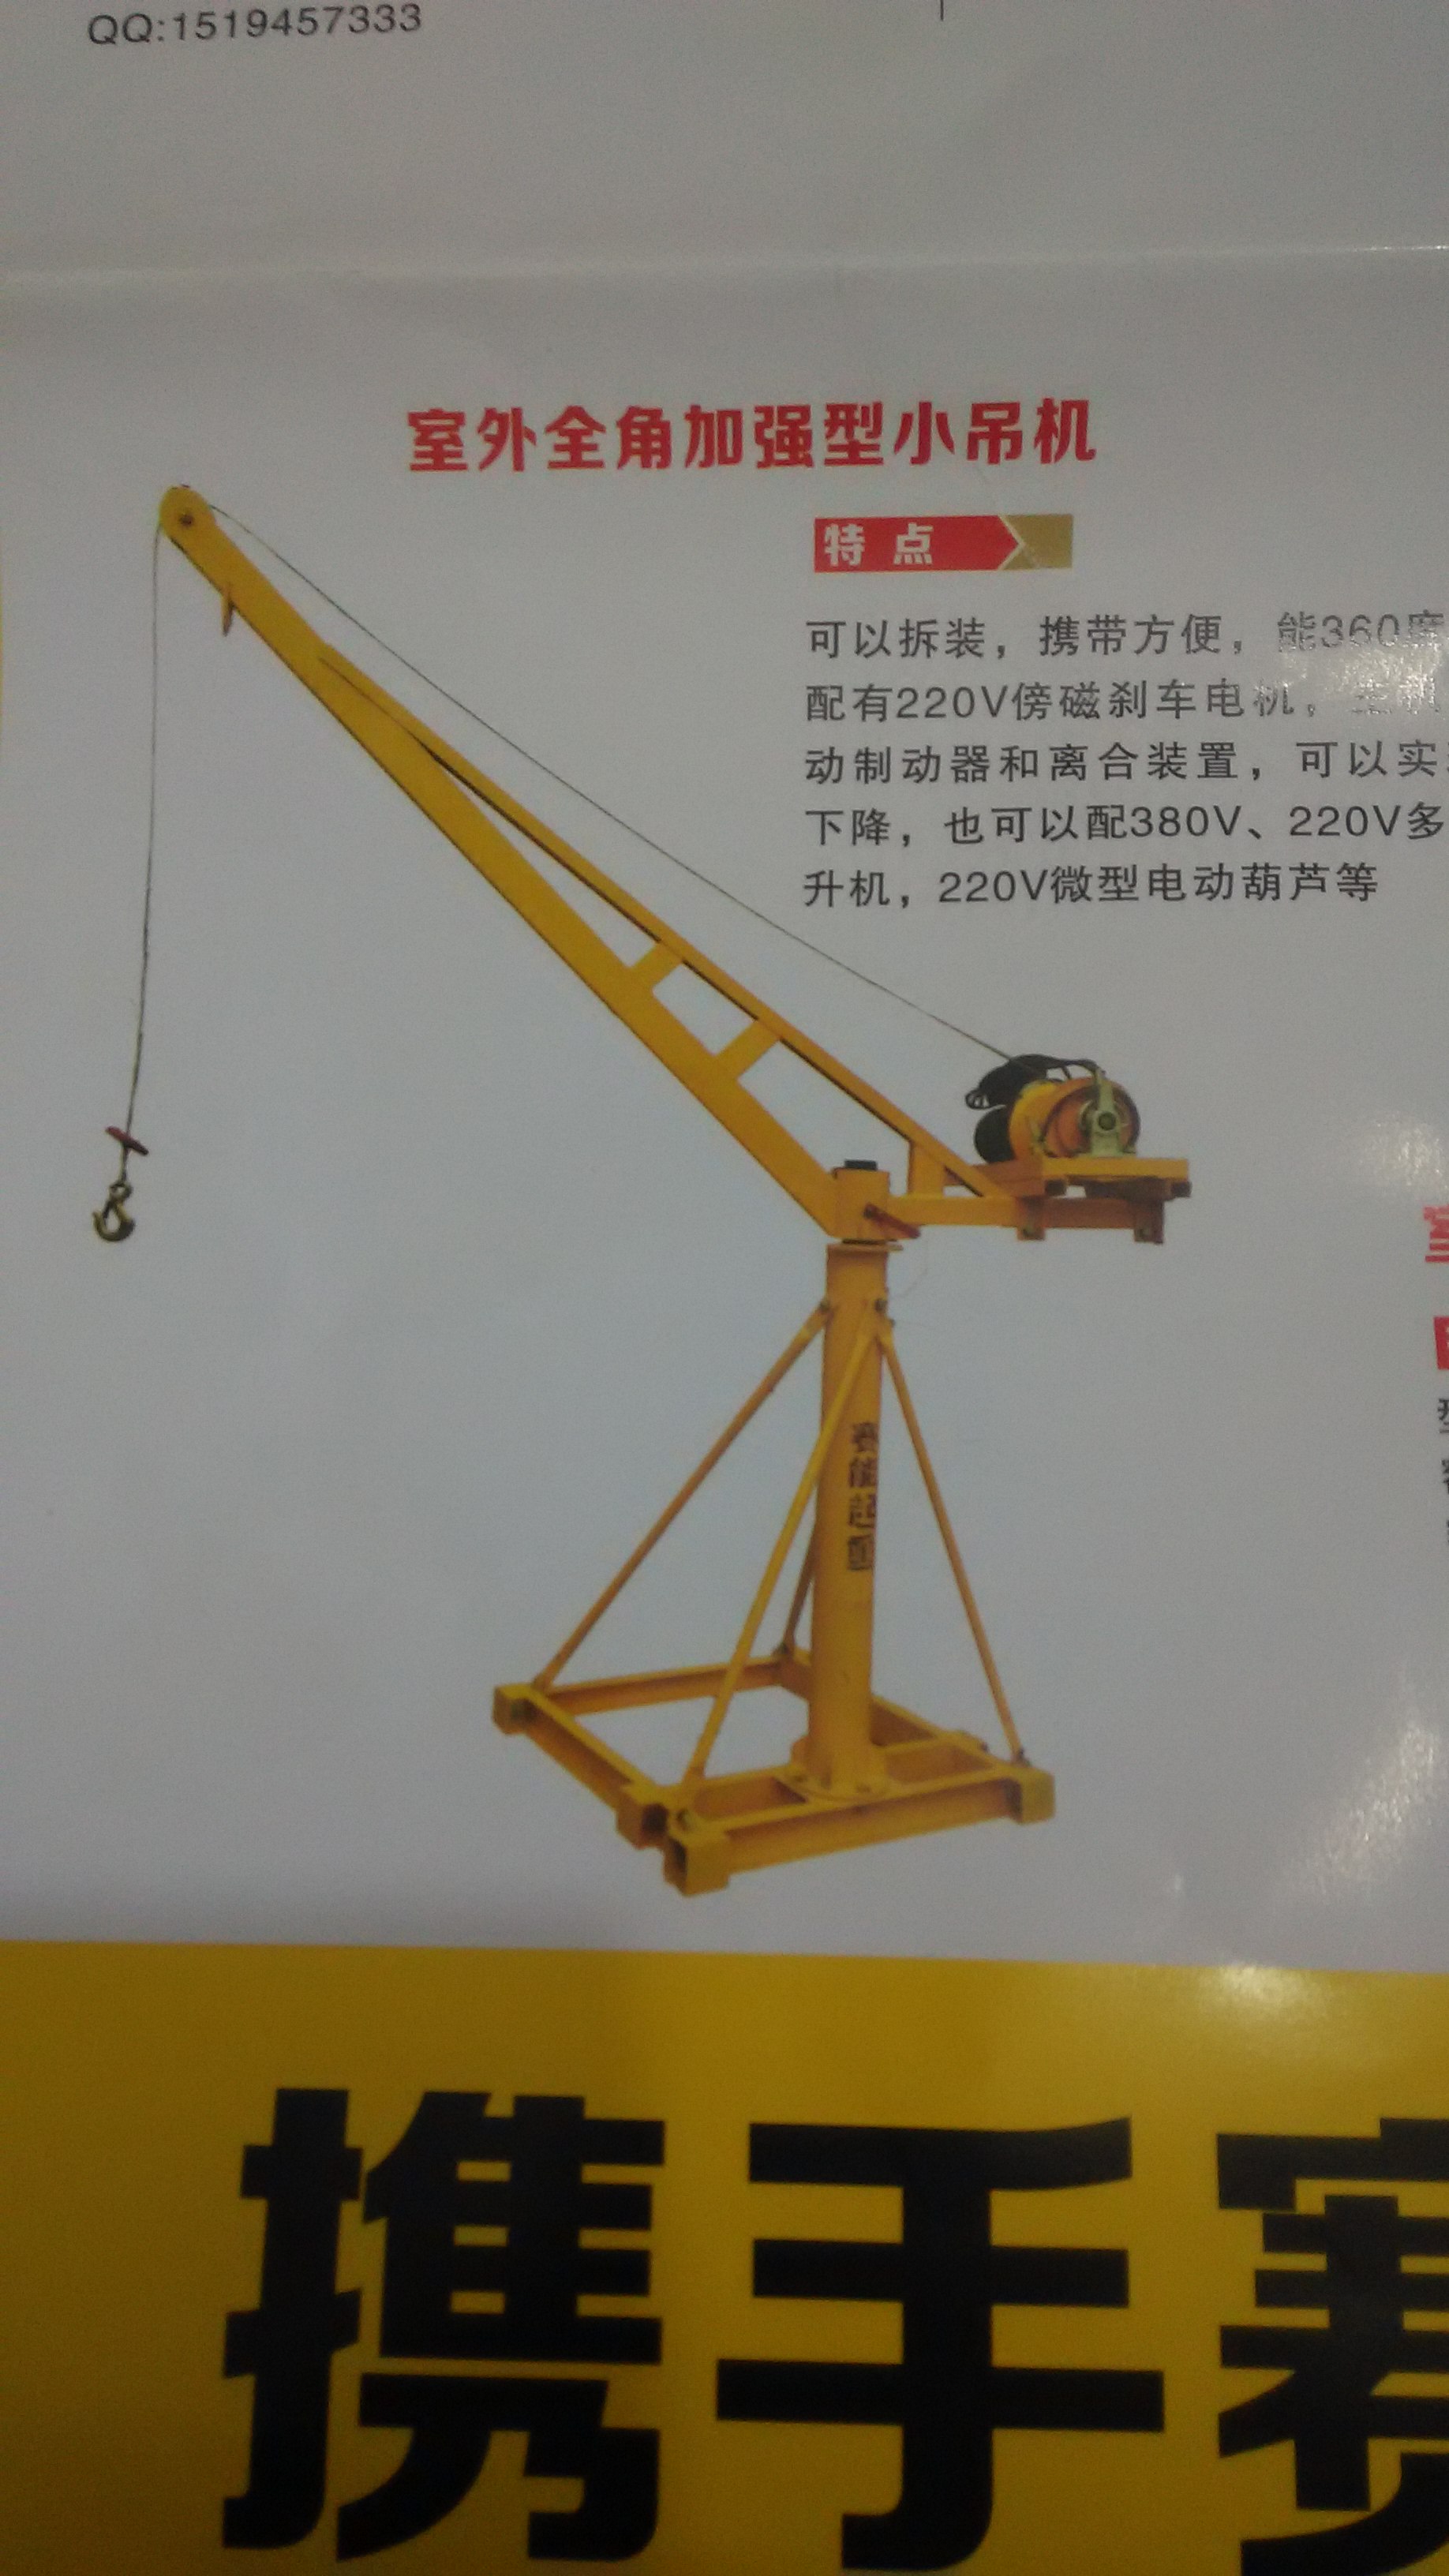 保定市便携式吊运机200公斤小型吊机车厂家便携式吊运机200公斤小型吊机车